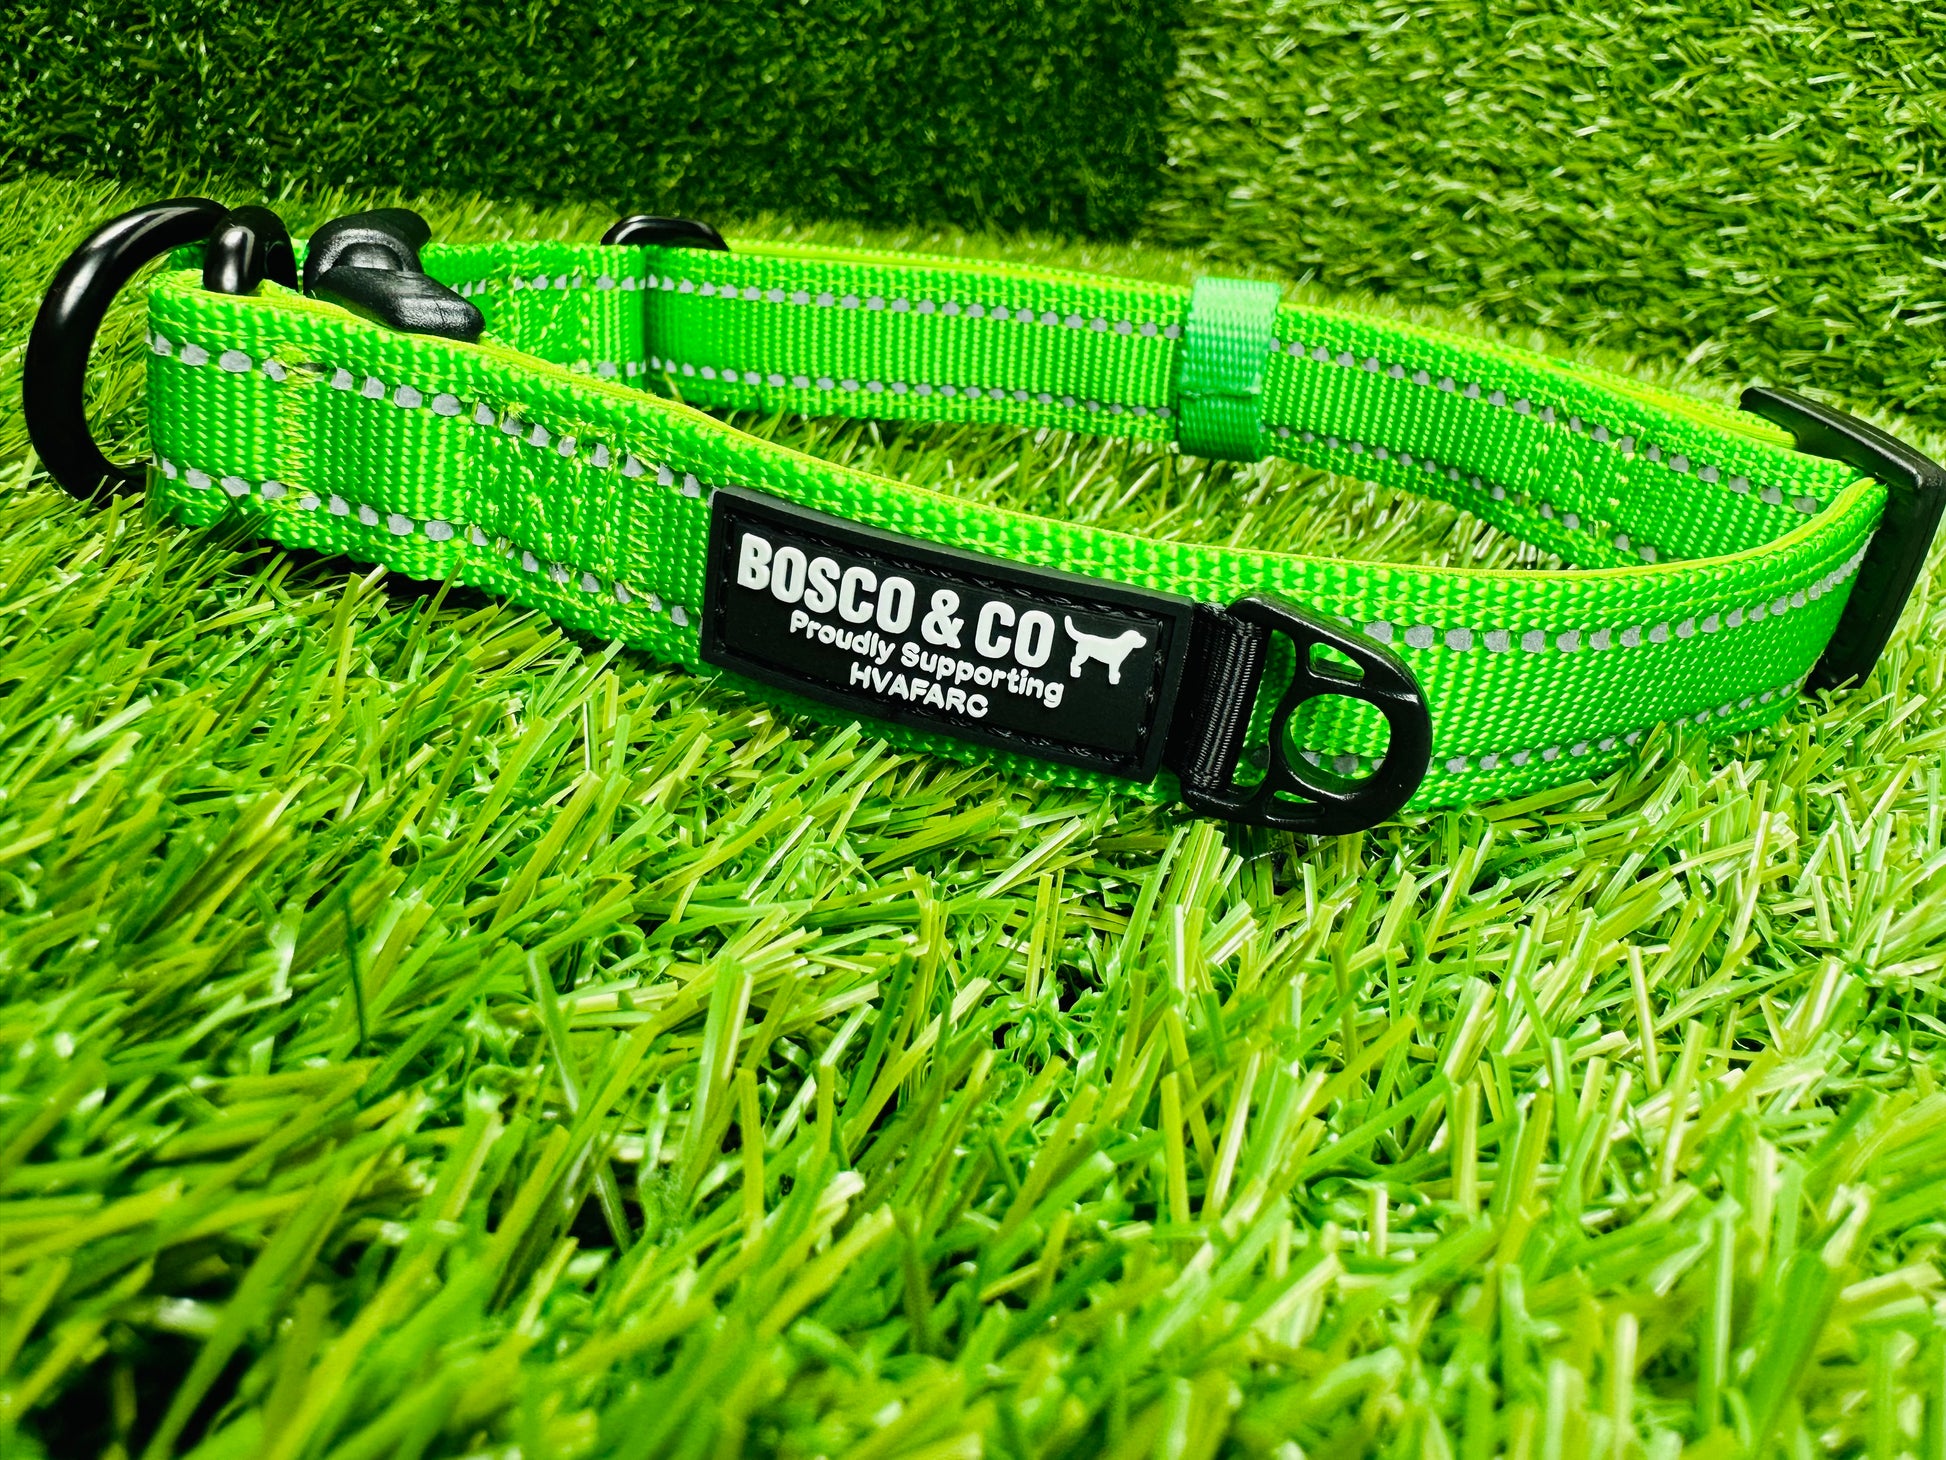 Bosco & Co plain Green collar